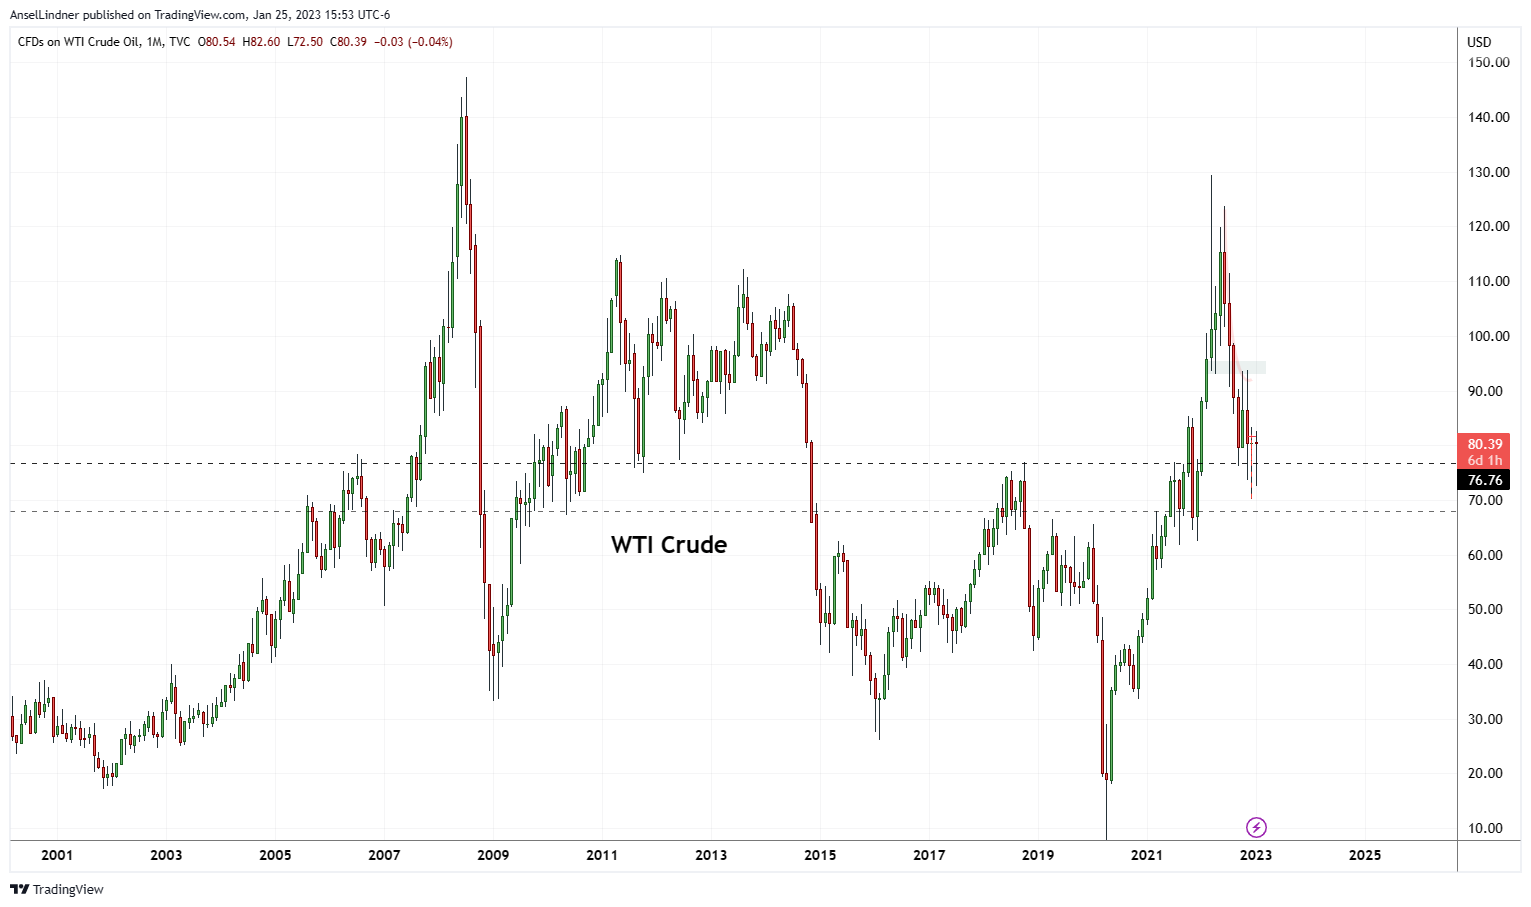 Long term oil chart